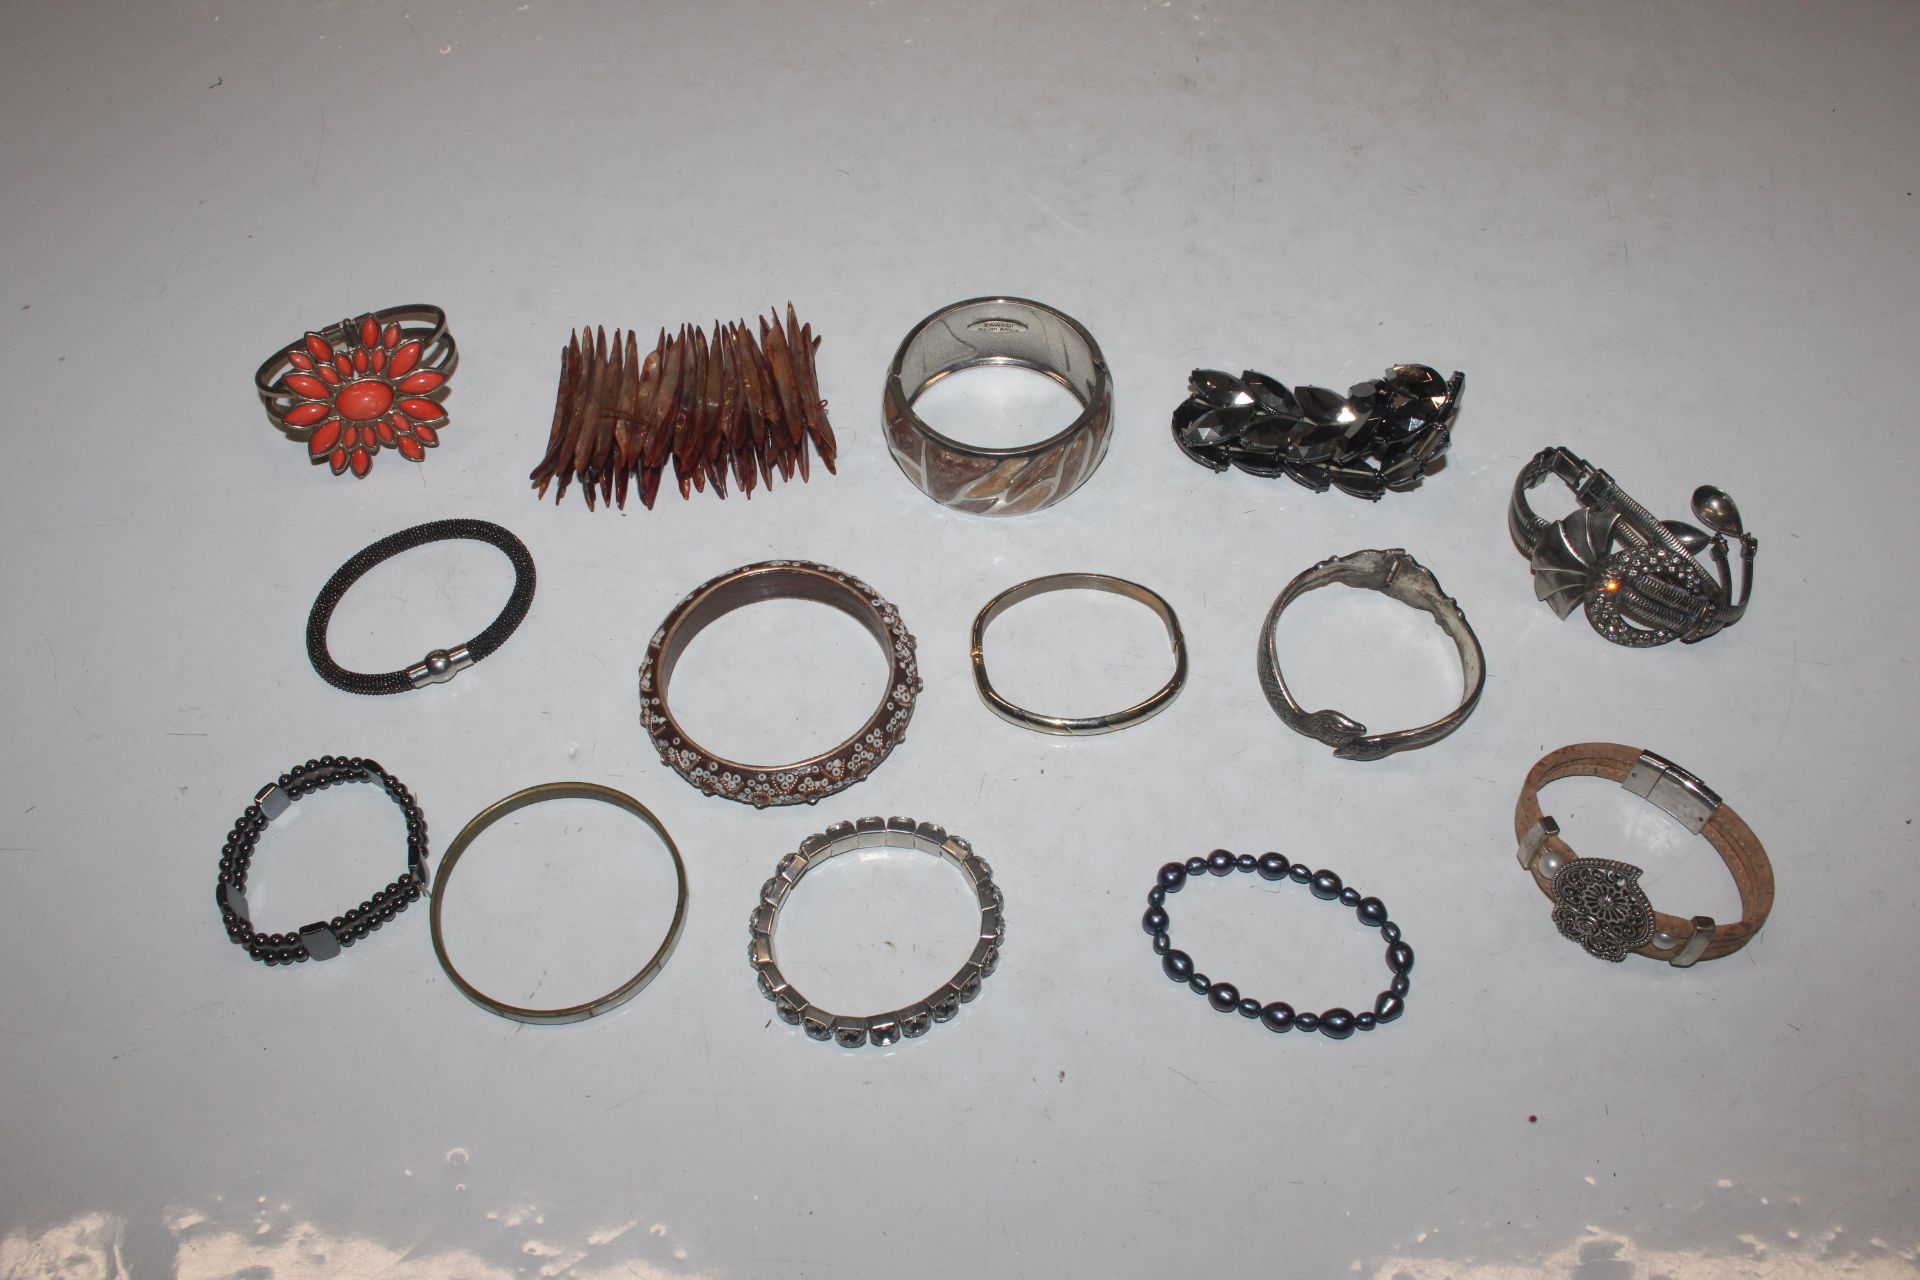 A box of various bangles